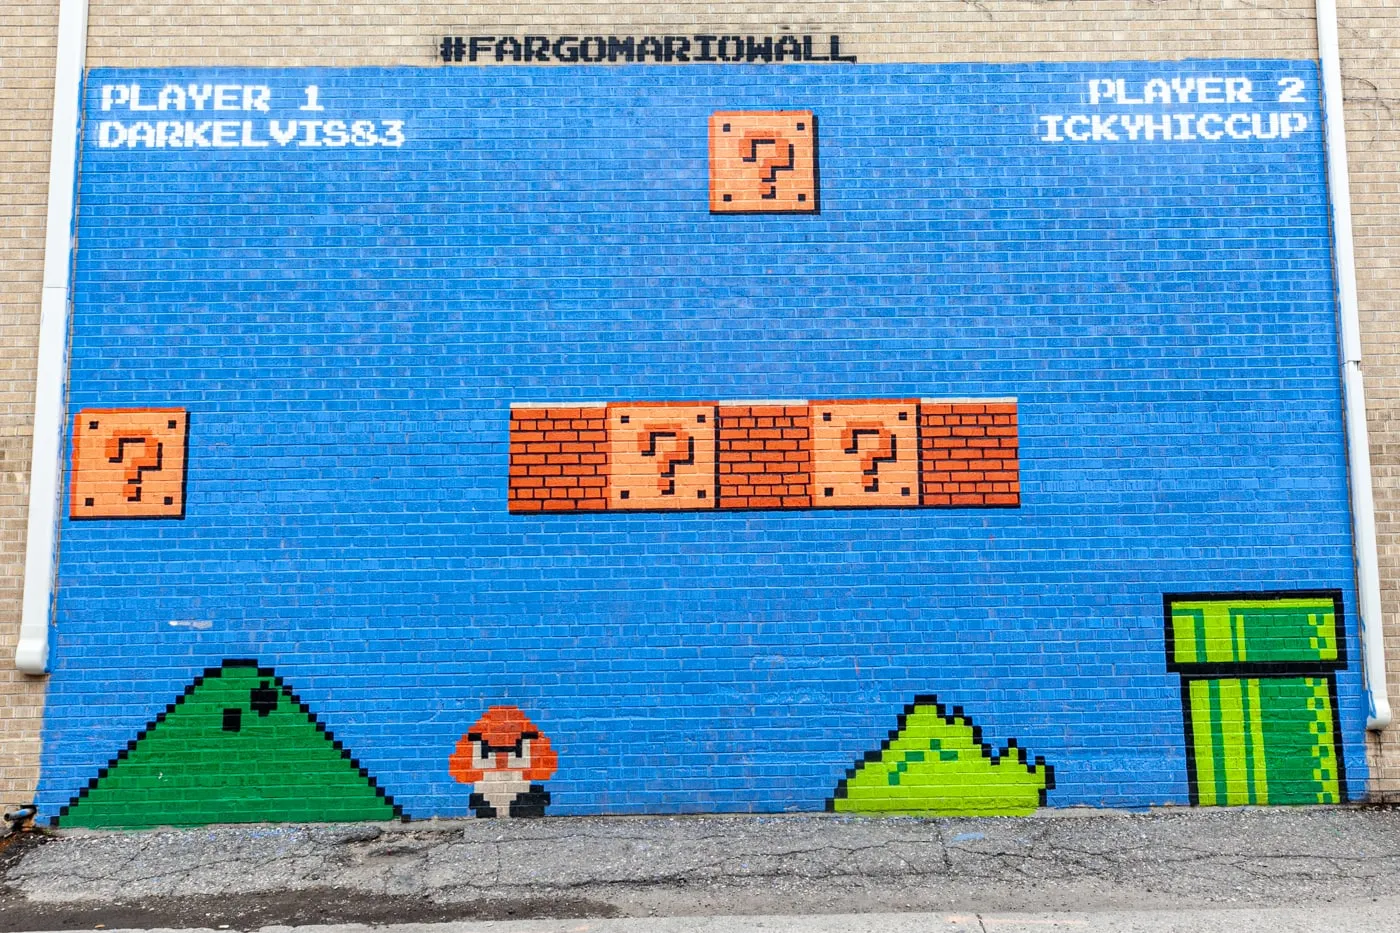 Fargo Mario Wall | Super Mario Bros Mural in Fargo, North Dakota | Street Art in Fargo, North Dakota